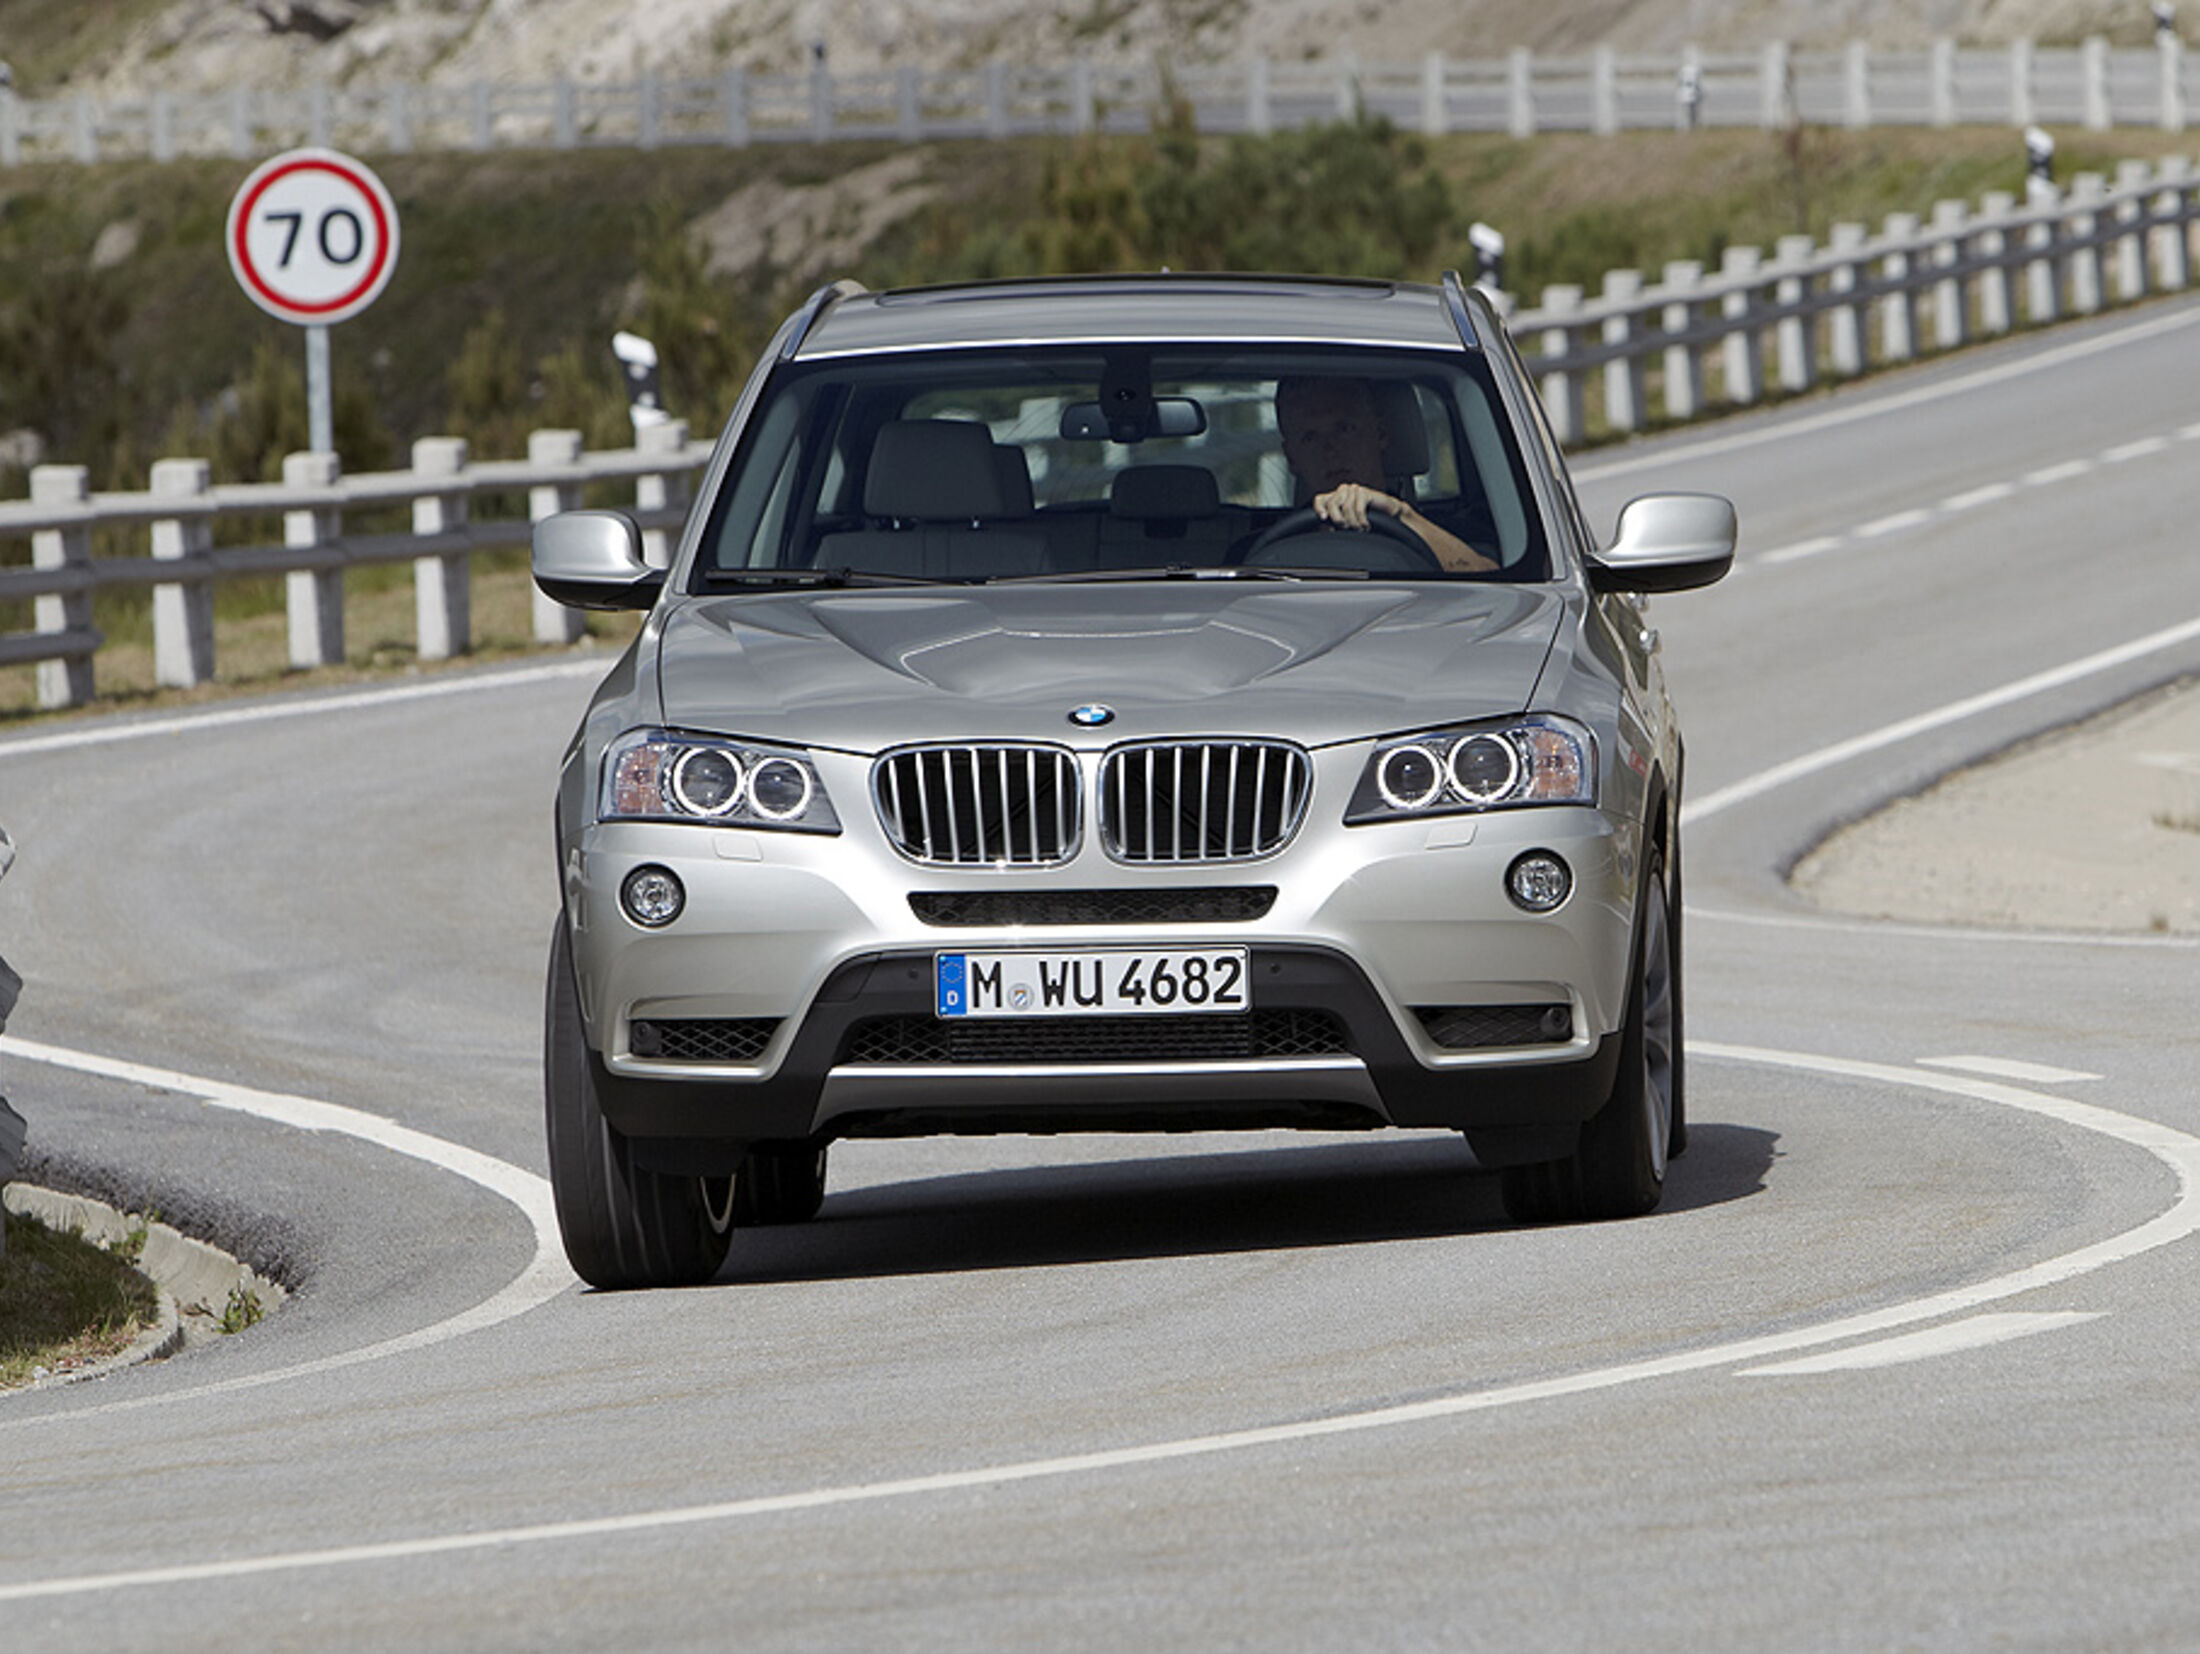 Gebraucht-Tipp: BMW X3 F25 (2010-2017)